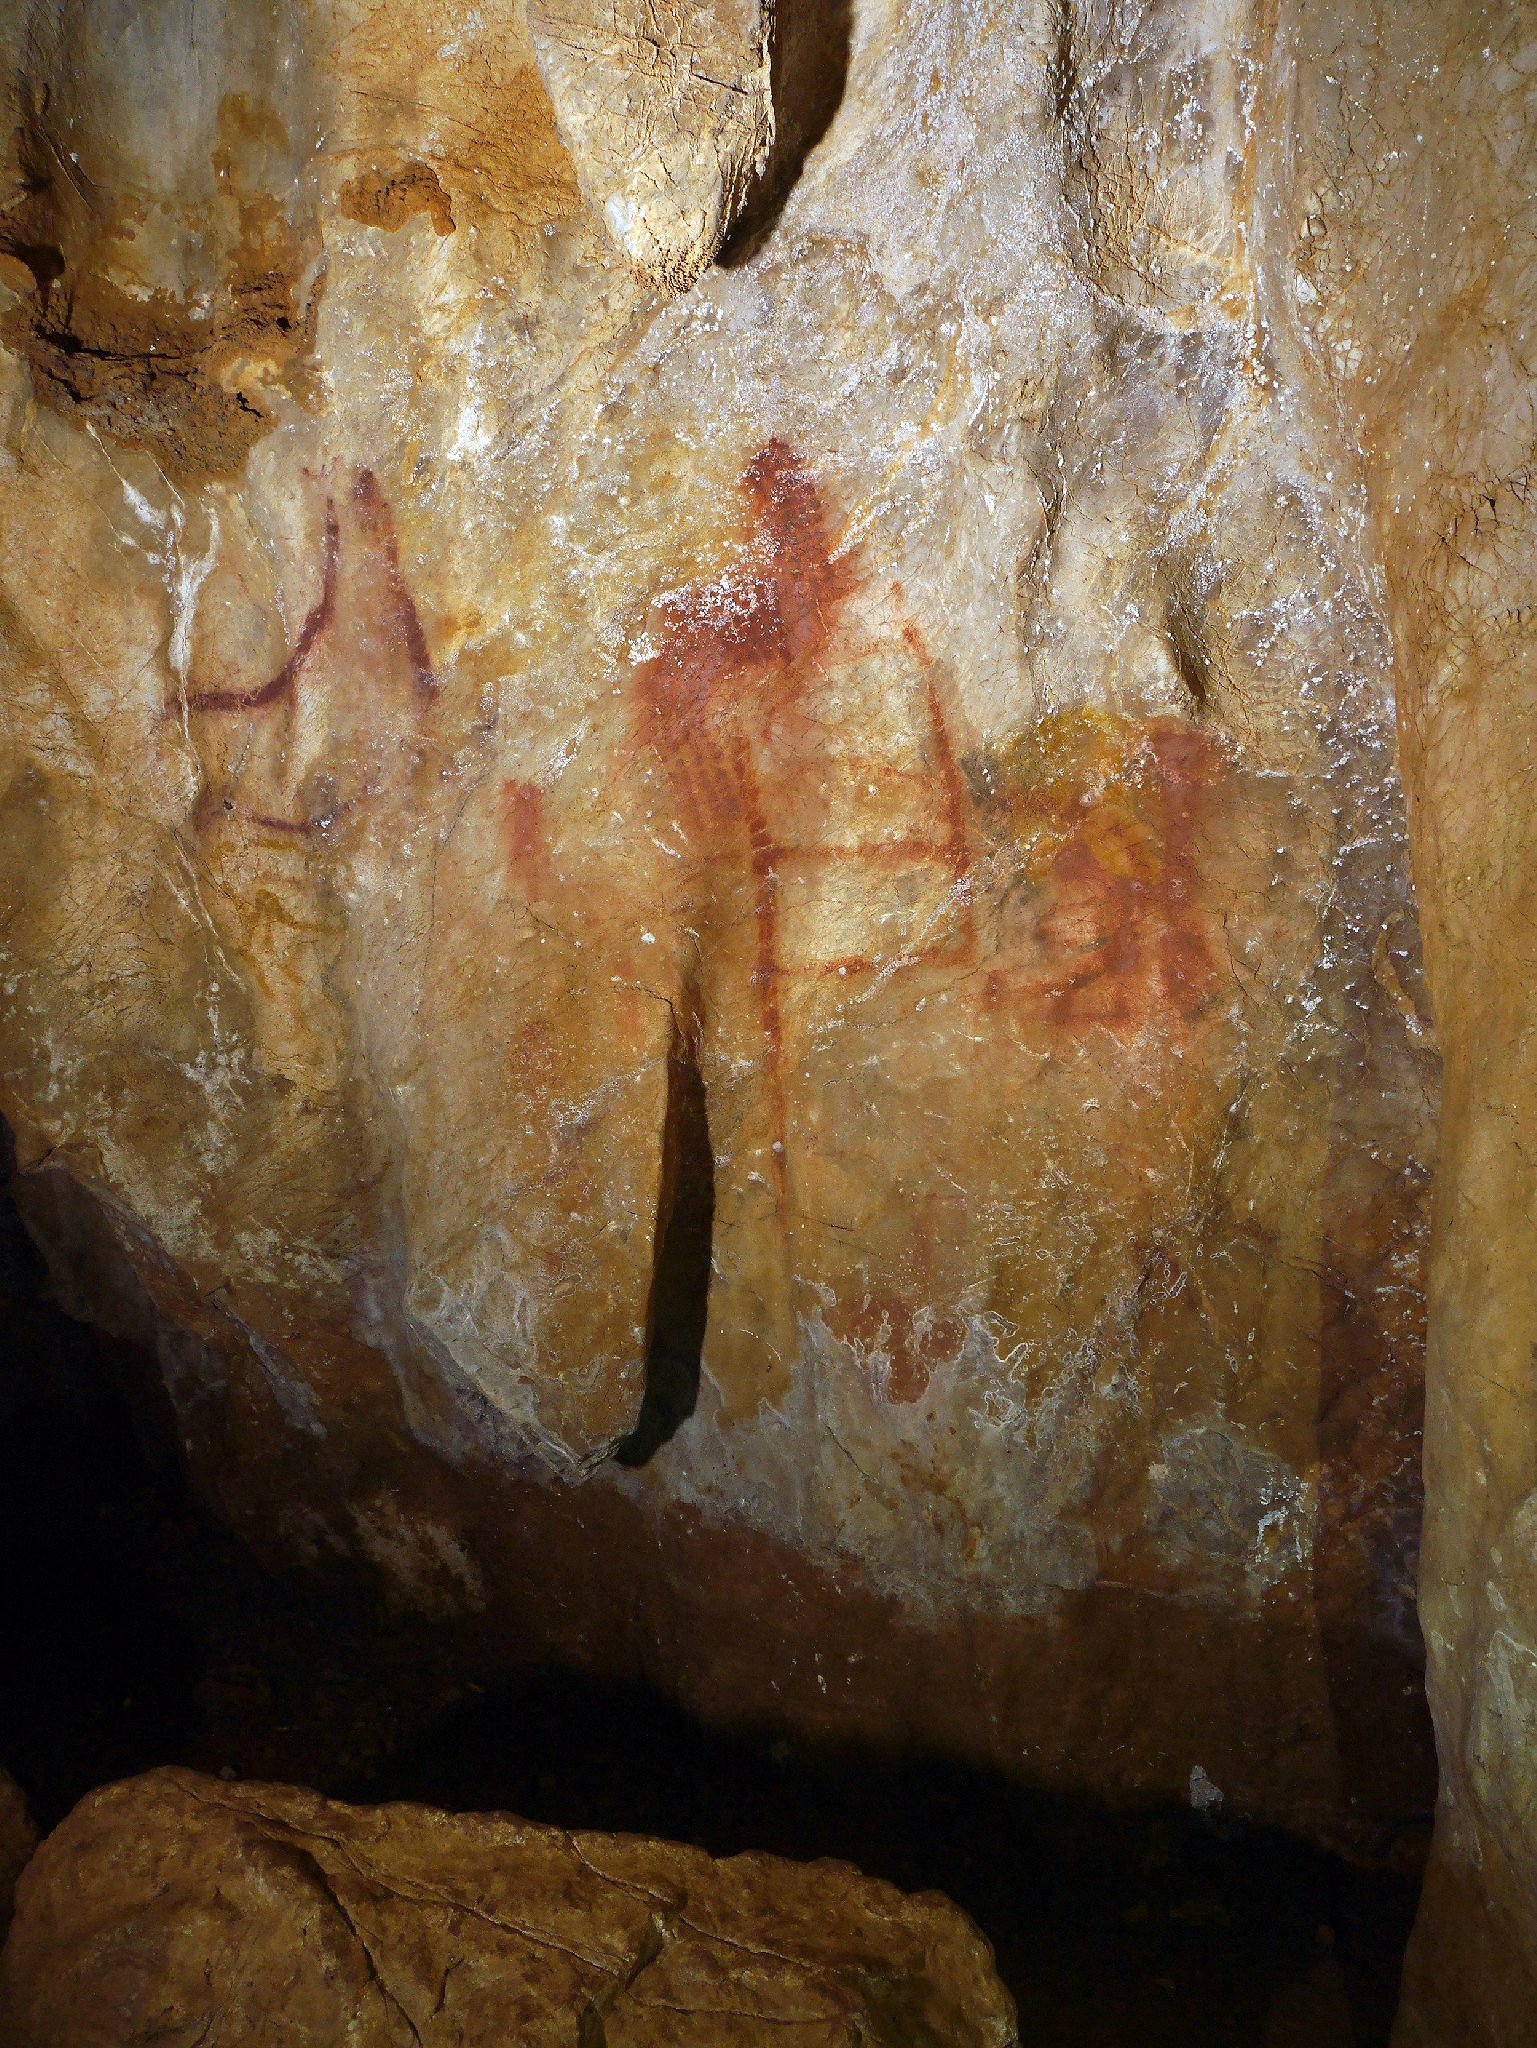 電子版 描いたのはネアンデルタール人か スペインで6万年以上前の洞窟壁画 科学技術 大学 ニュース 日刊工業新聞 電子版